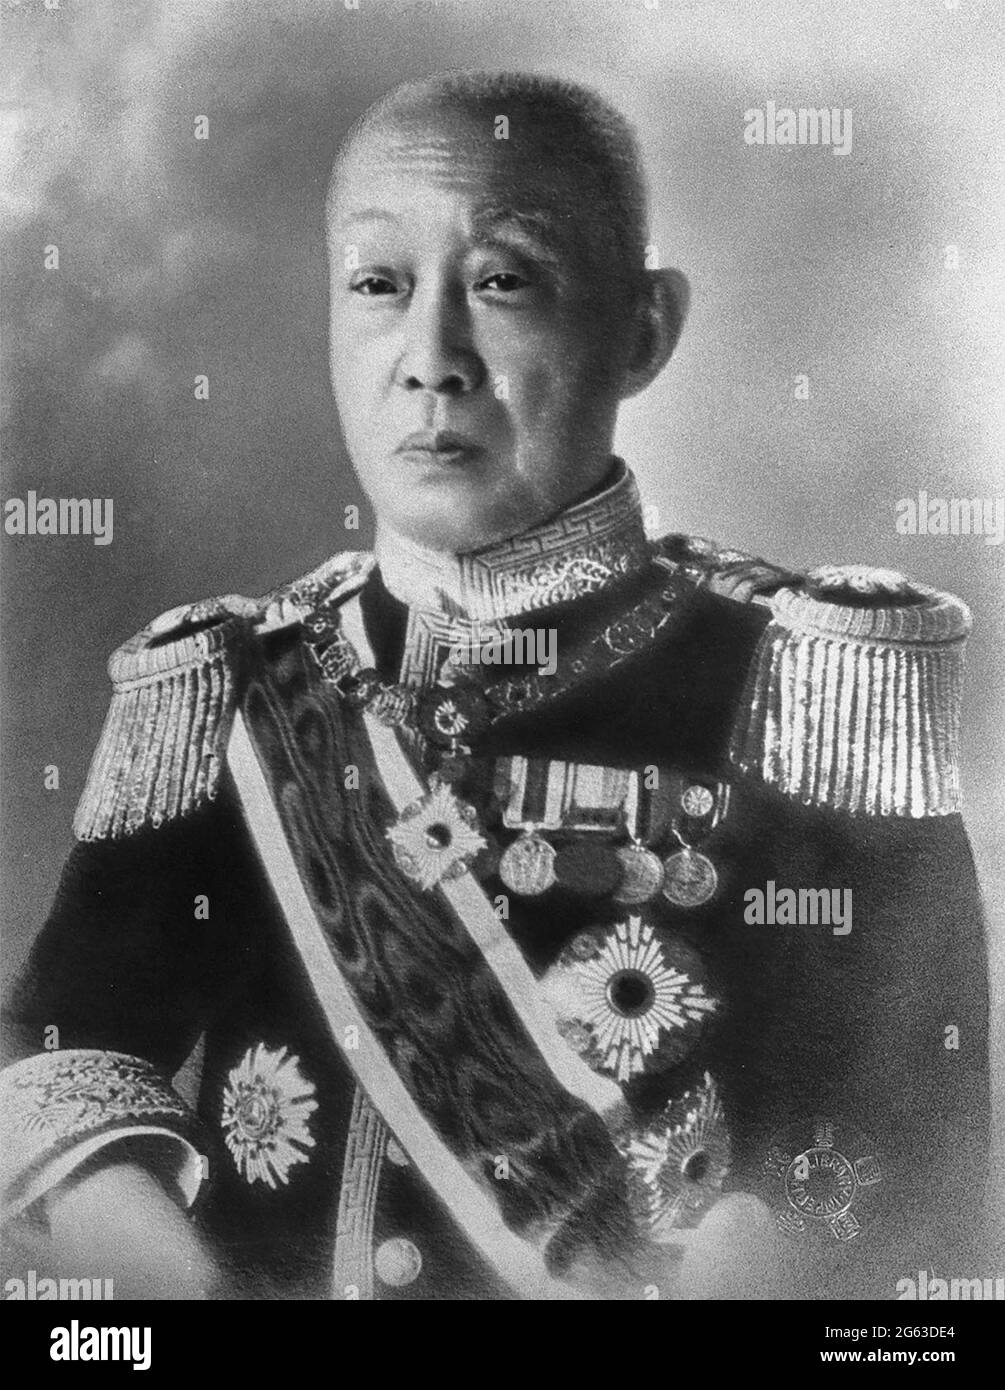 Ritratto del principe Saionji Kinmochi, politico giapponese, statista e due volte primo ministro del Giappone. Fu elevato da marchese a principe nel 1920. Come ultimo membro sopravvissuto della genrō giapponese, fu la voce più influente della politica giapponese dalla metà degli anni venti agli inizi degli anni trenta. Foto Stock